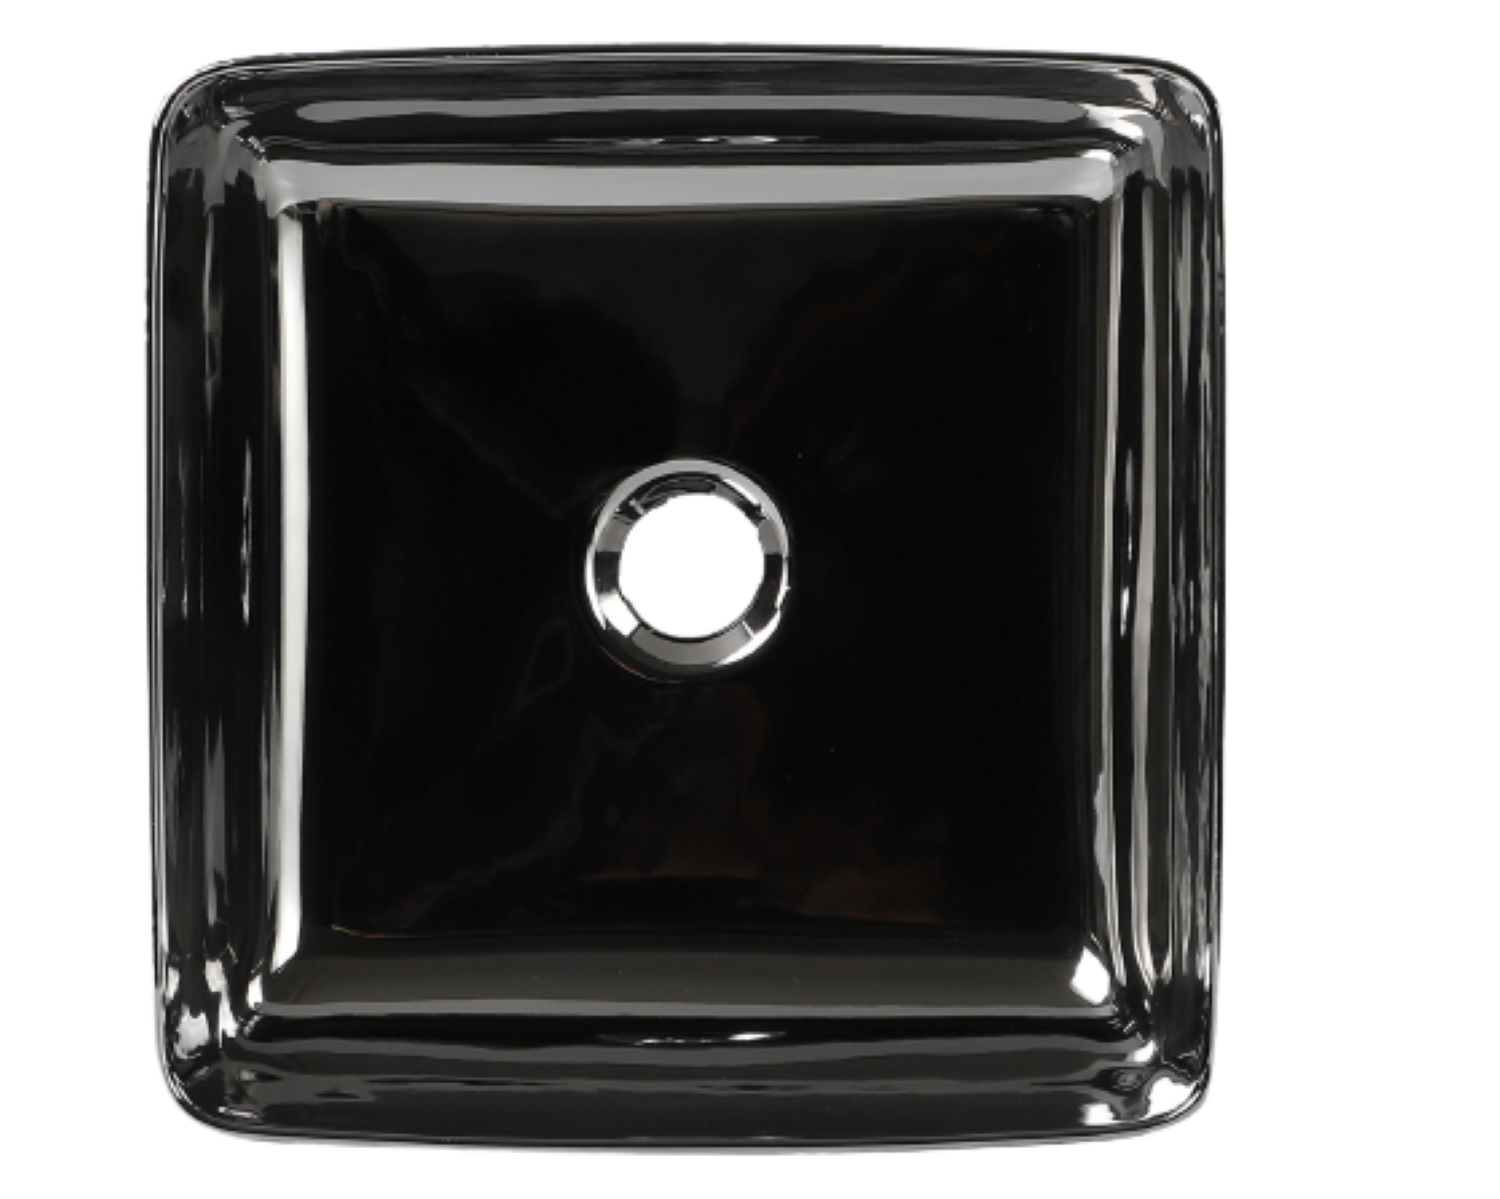 Lavabo Cerámico para Baño SAO forma cuadrada en color plata con detalles en relieve metalizados. De sobreponer, con diseño europeo ideal para todo tipo de baños. Dimensiones 36.5 x 36.5 x 13.5 cms. (base x altura x profundidad)